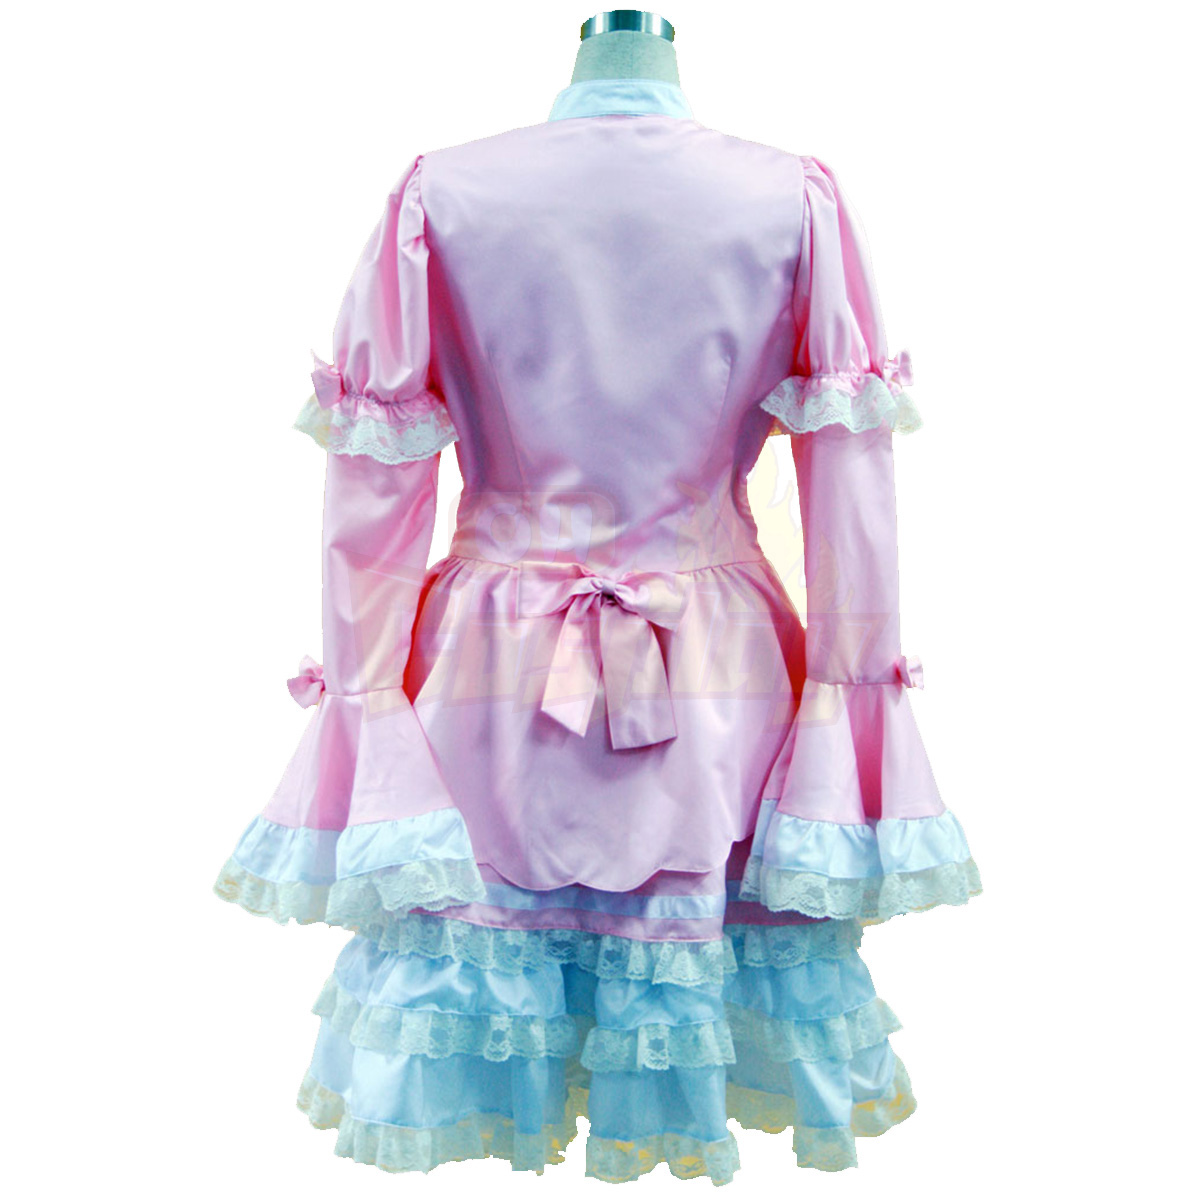 호화로운 로리타 문화 핑크와 화이트 민소매 짧은 드레스 코스프레